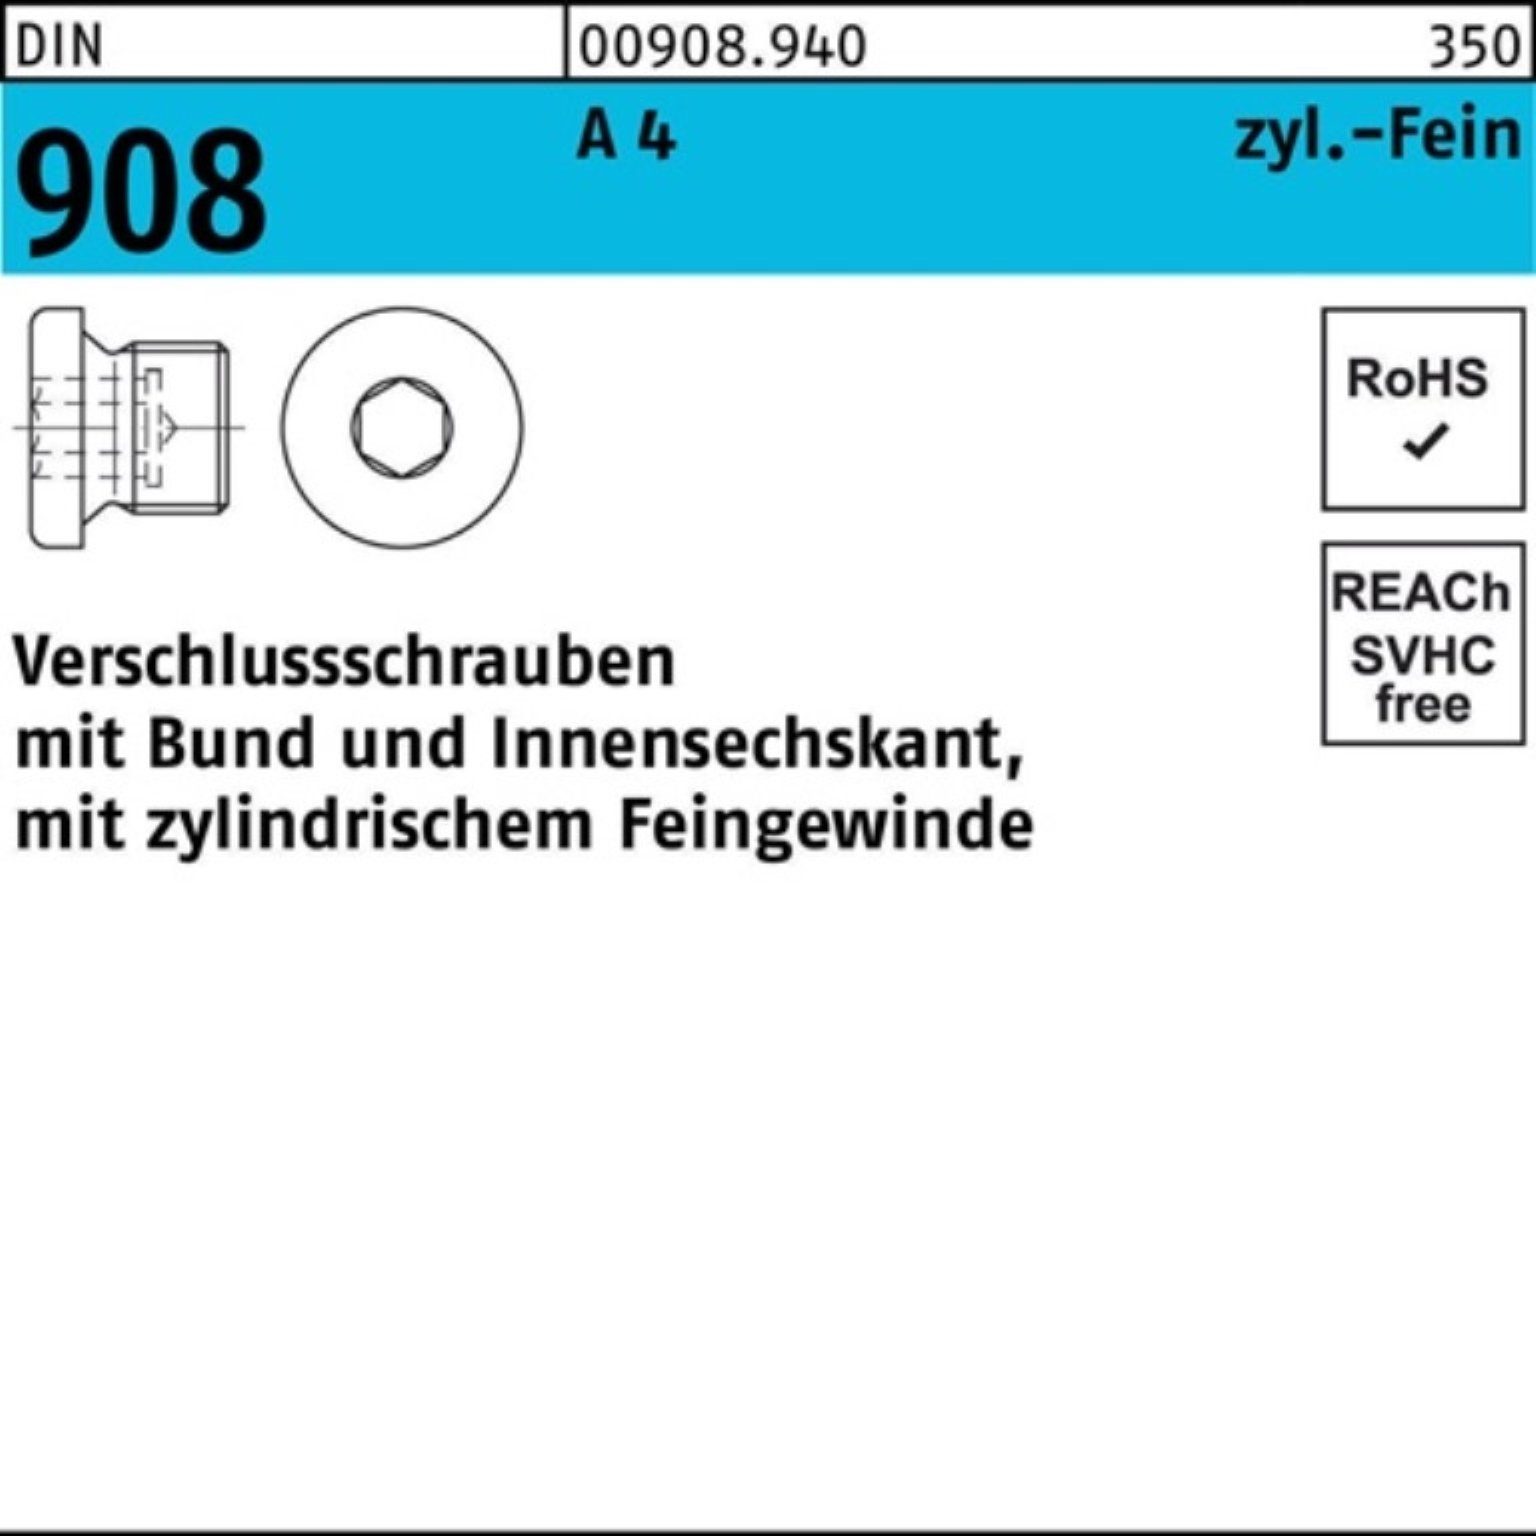 Reyher Schraube 100er Pack Verschlußschraube DIN 908 Bund/Innen-6kt M8x 1 A 4 100 St